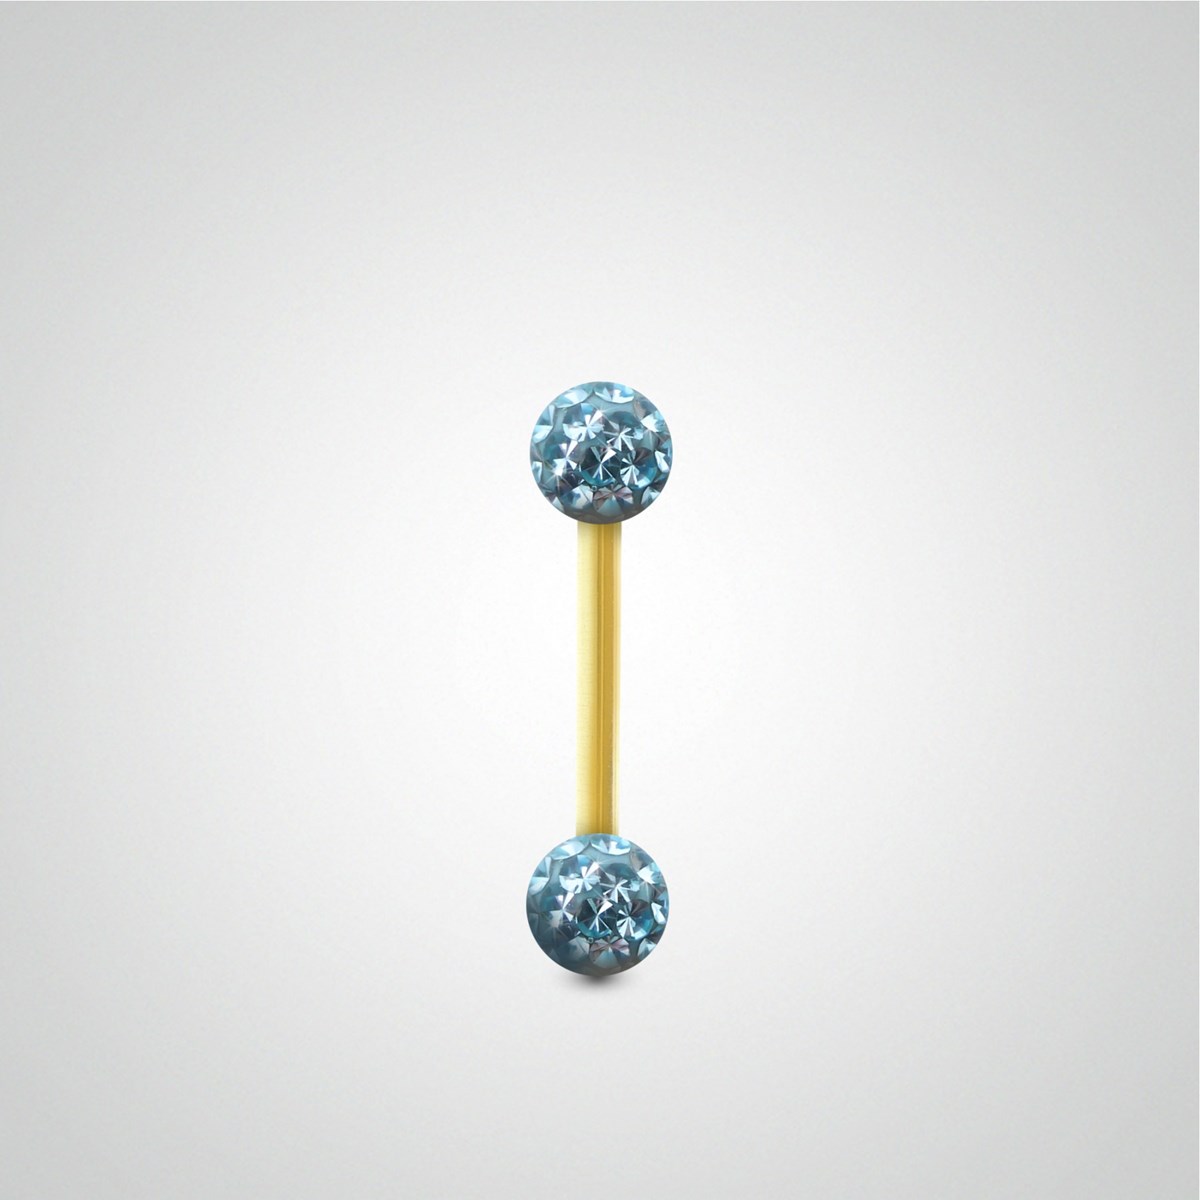 Piercing hélix barre or jaune avec boule en cristal de Swarovski bleu clair